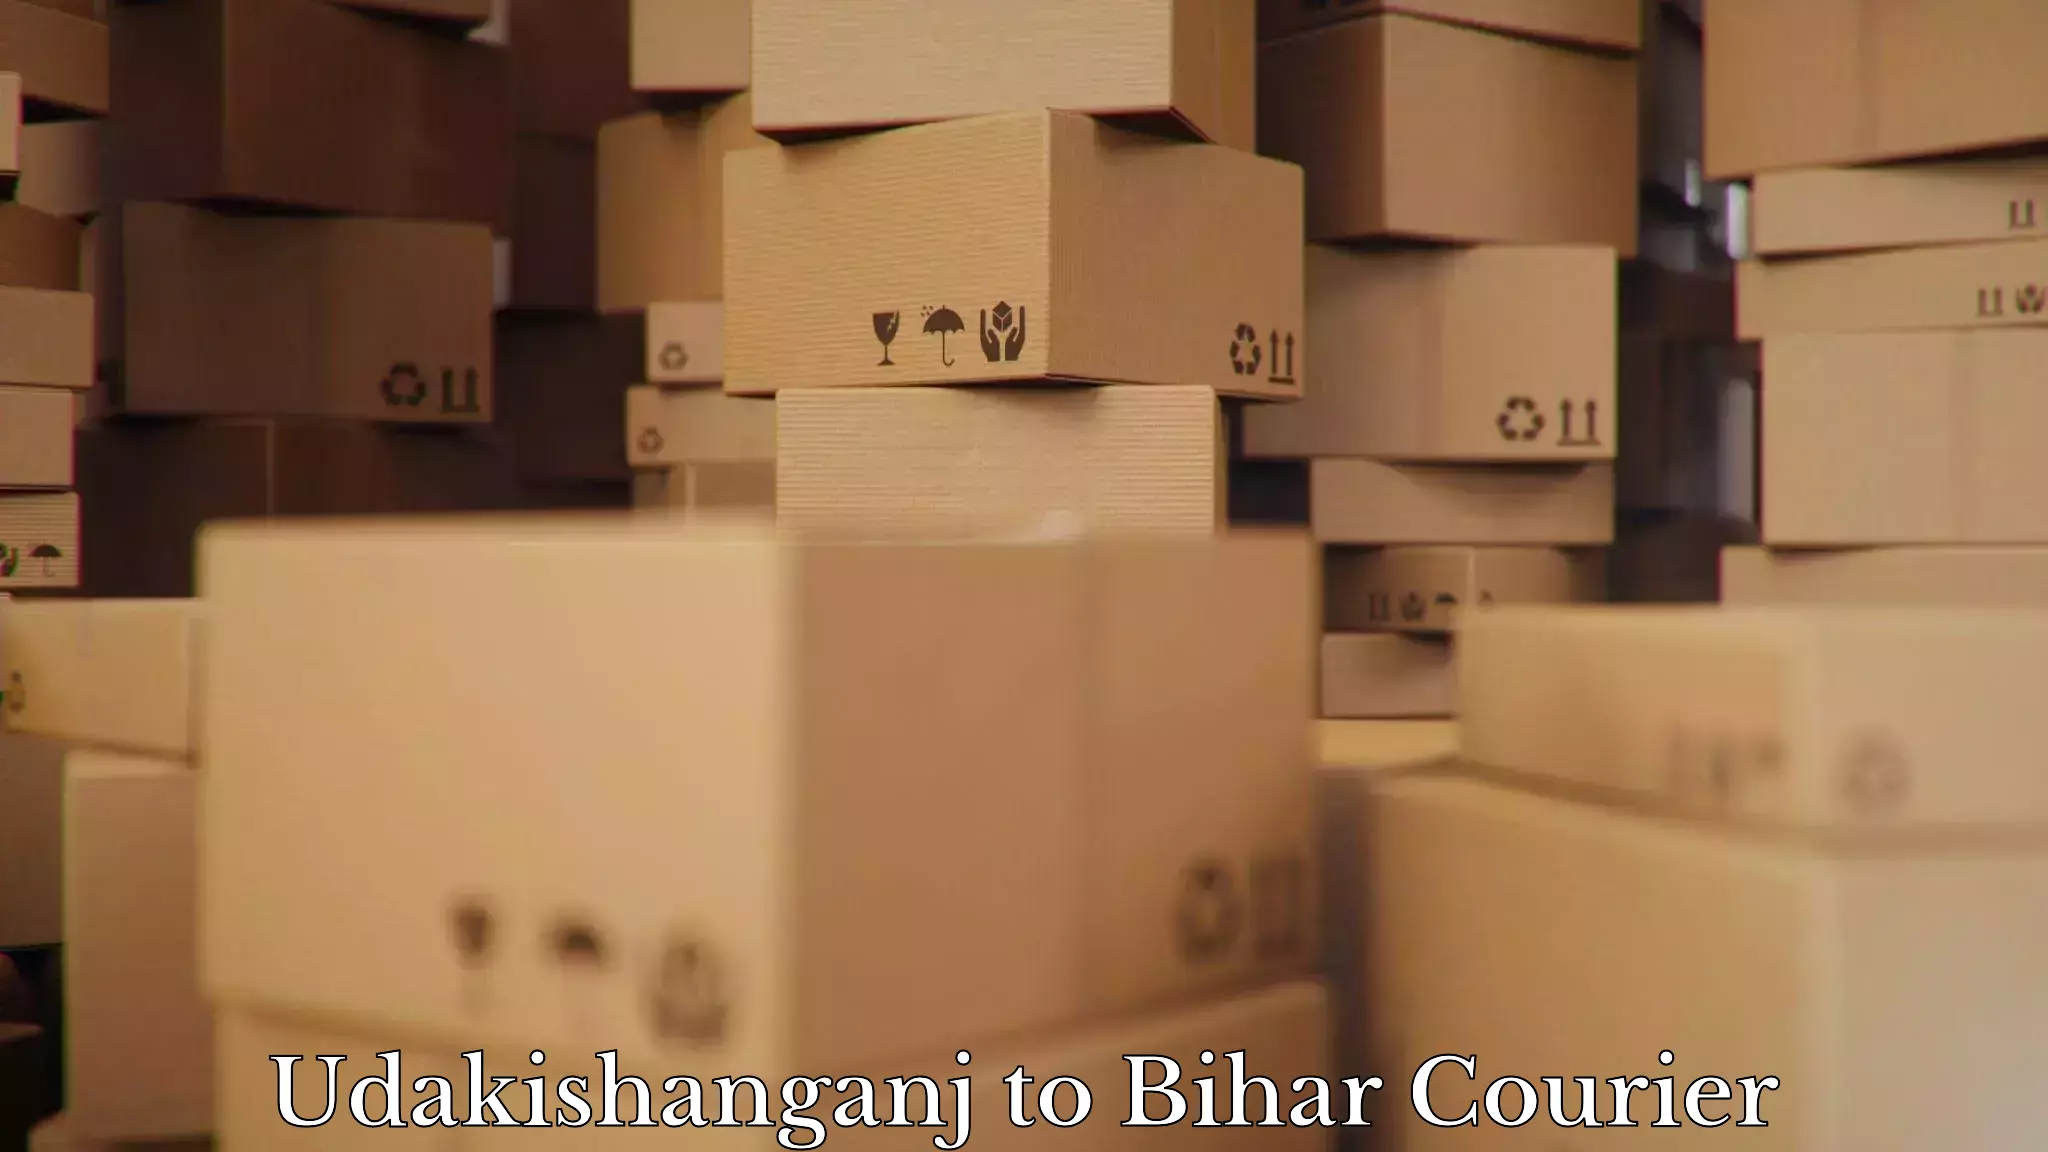 Furniture moving assistance Udakishanganj to Bhorey